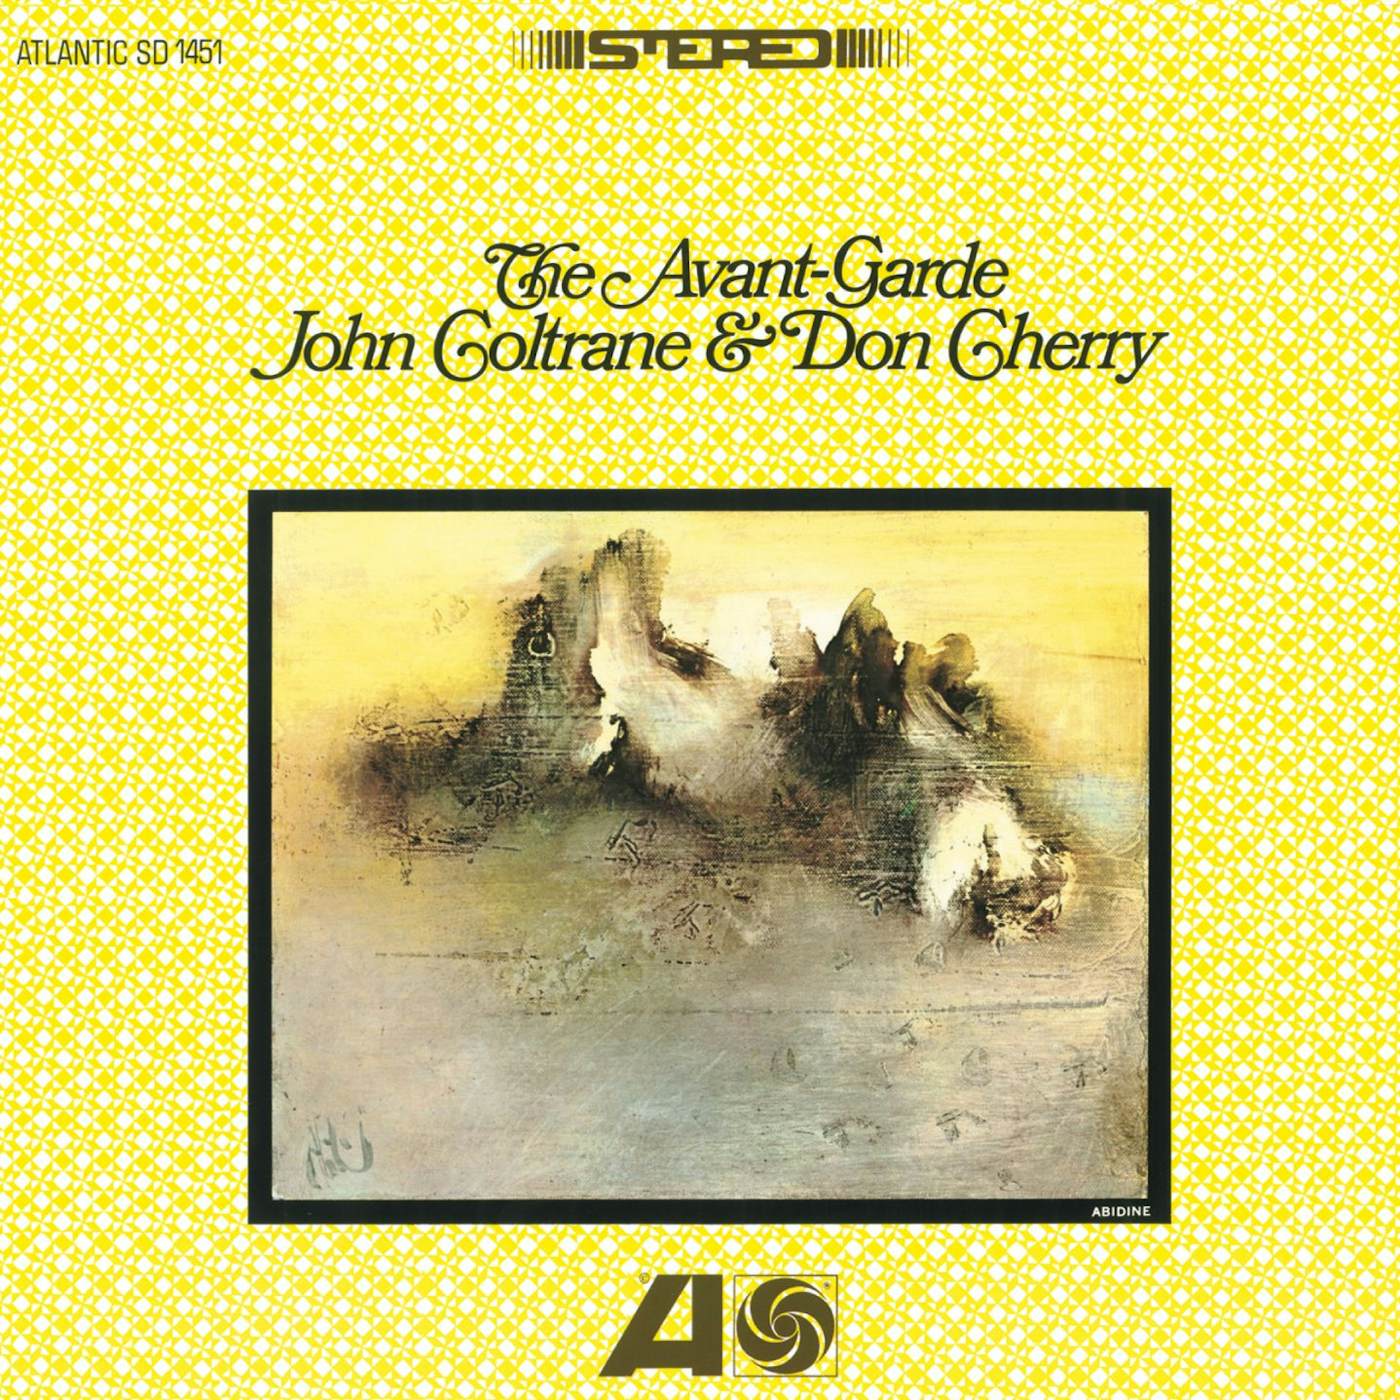 John Coltrane & Don Cherry AVANT-GARDE CD